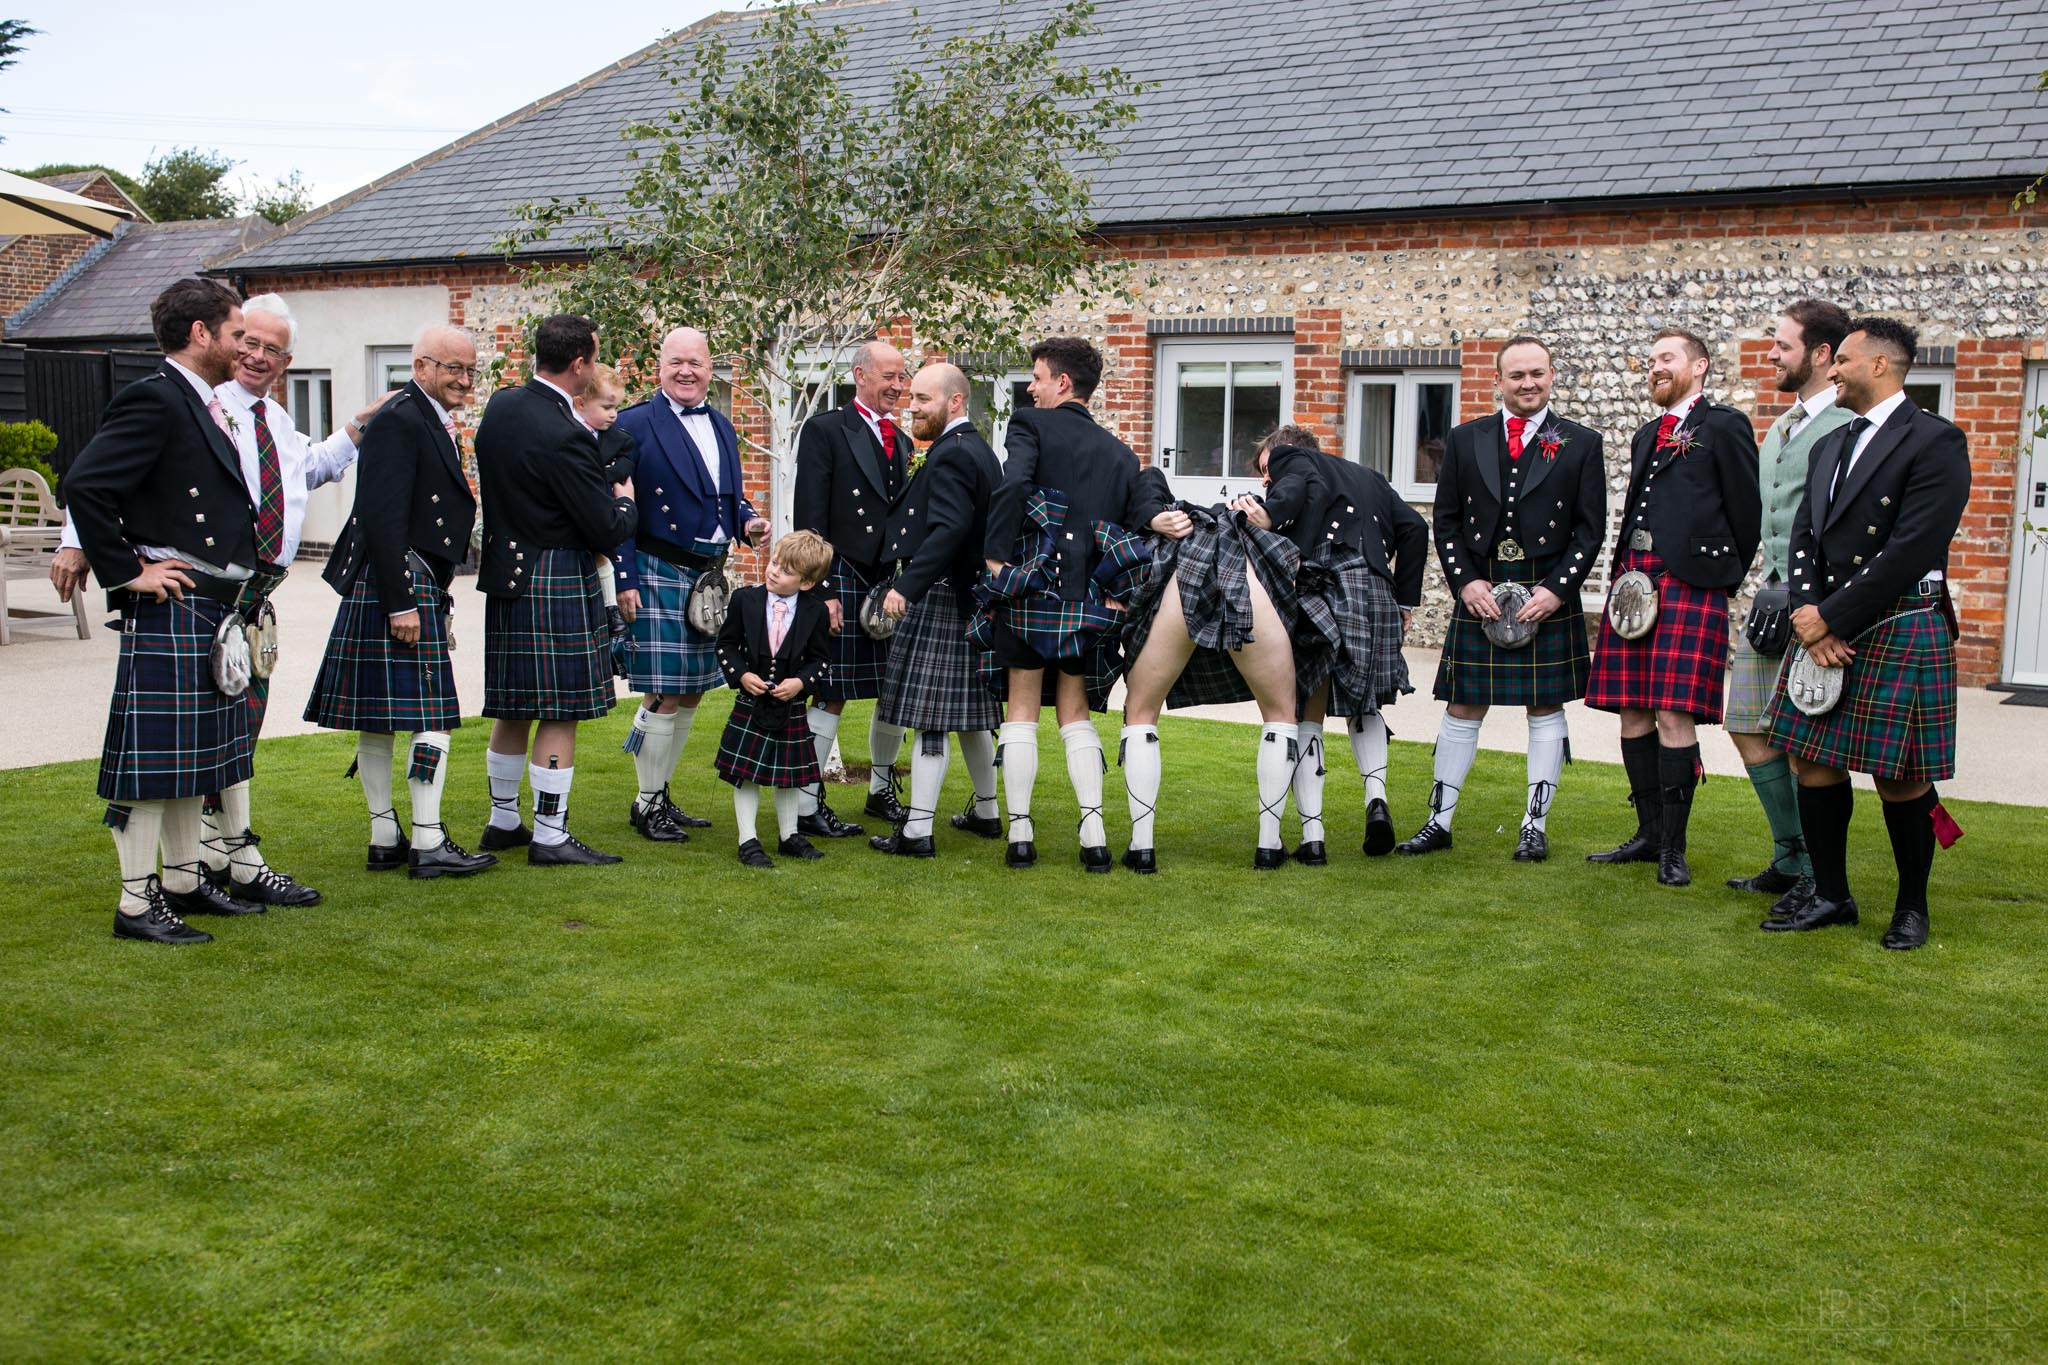 Scottish tradional Weddings at Farbridge